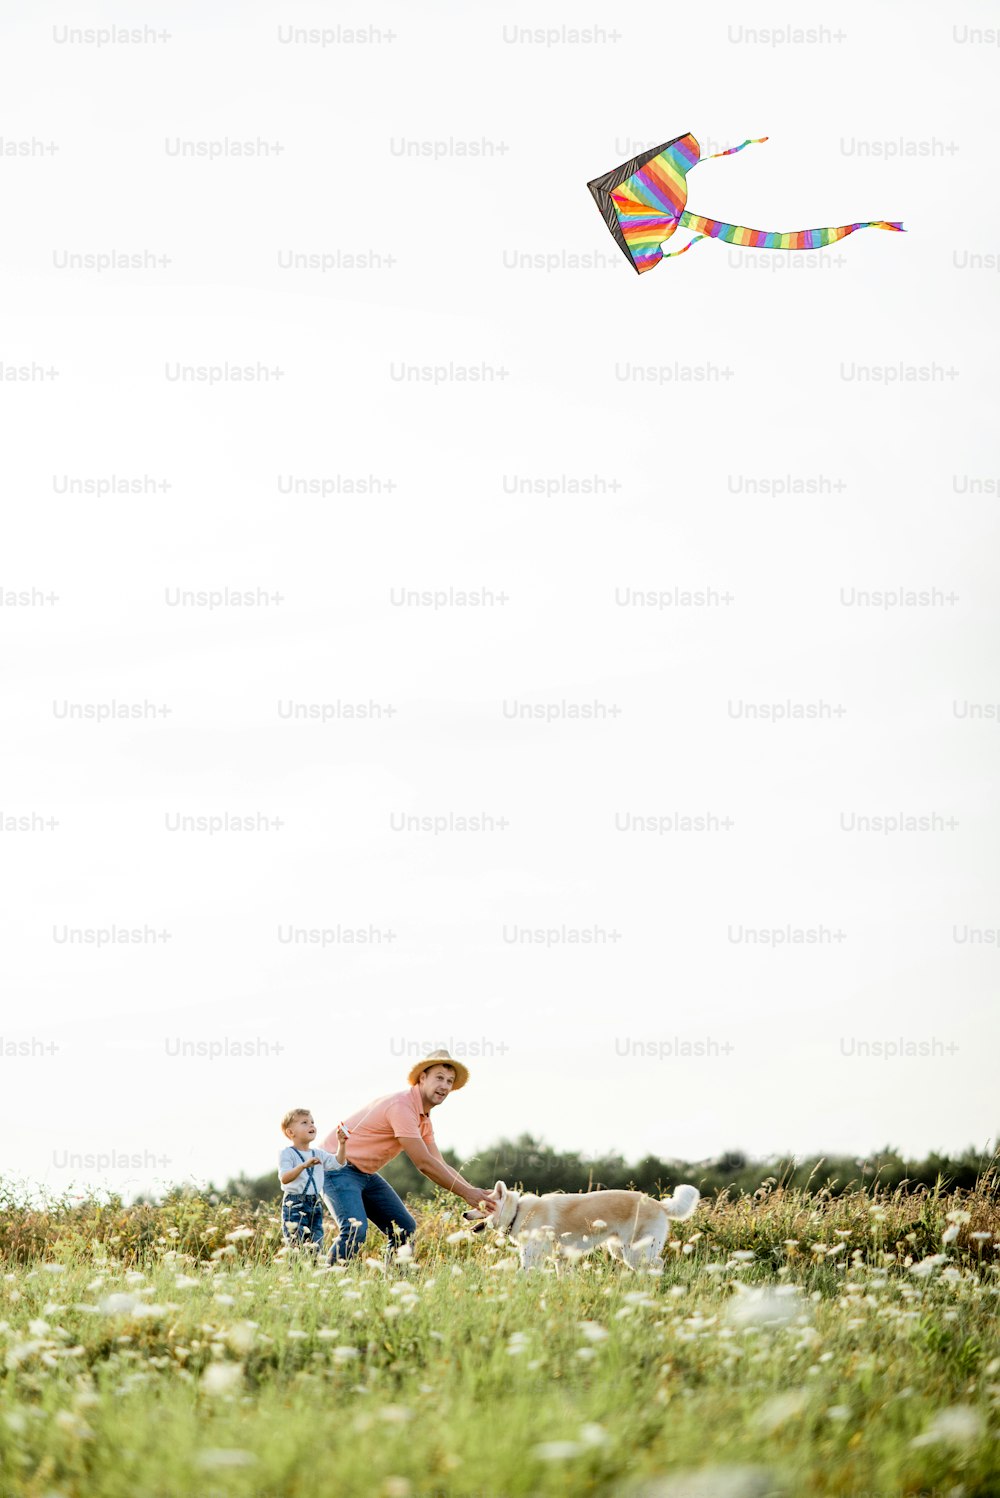 Pai com filho lançando pipa de ar colorida no campo durante o pôr do sol. Conceito de uma família feliz se divertindo durante a atividade de verão